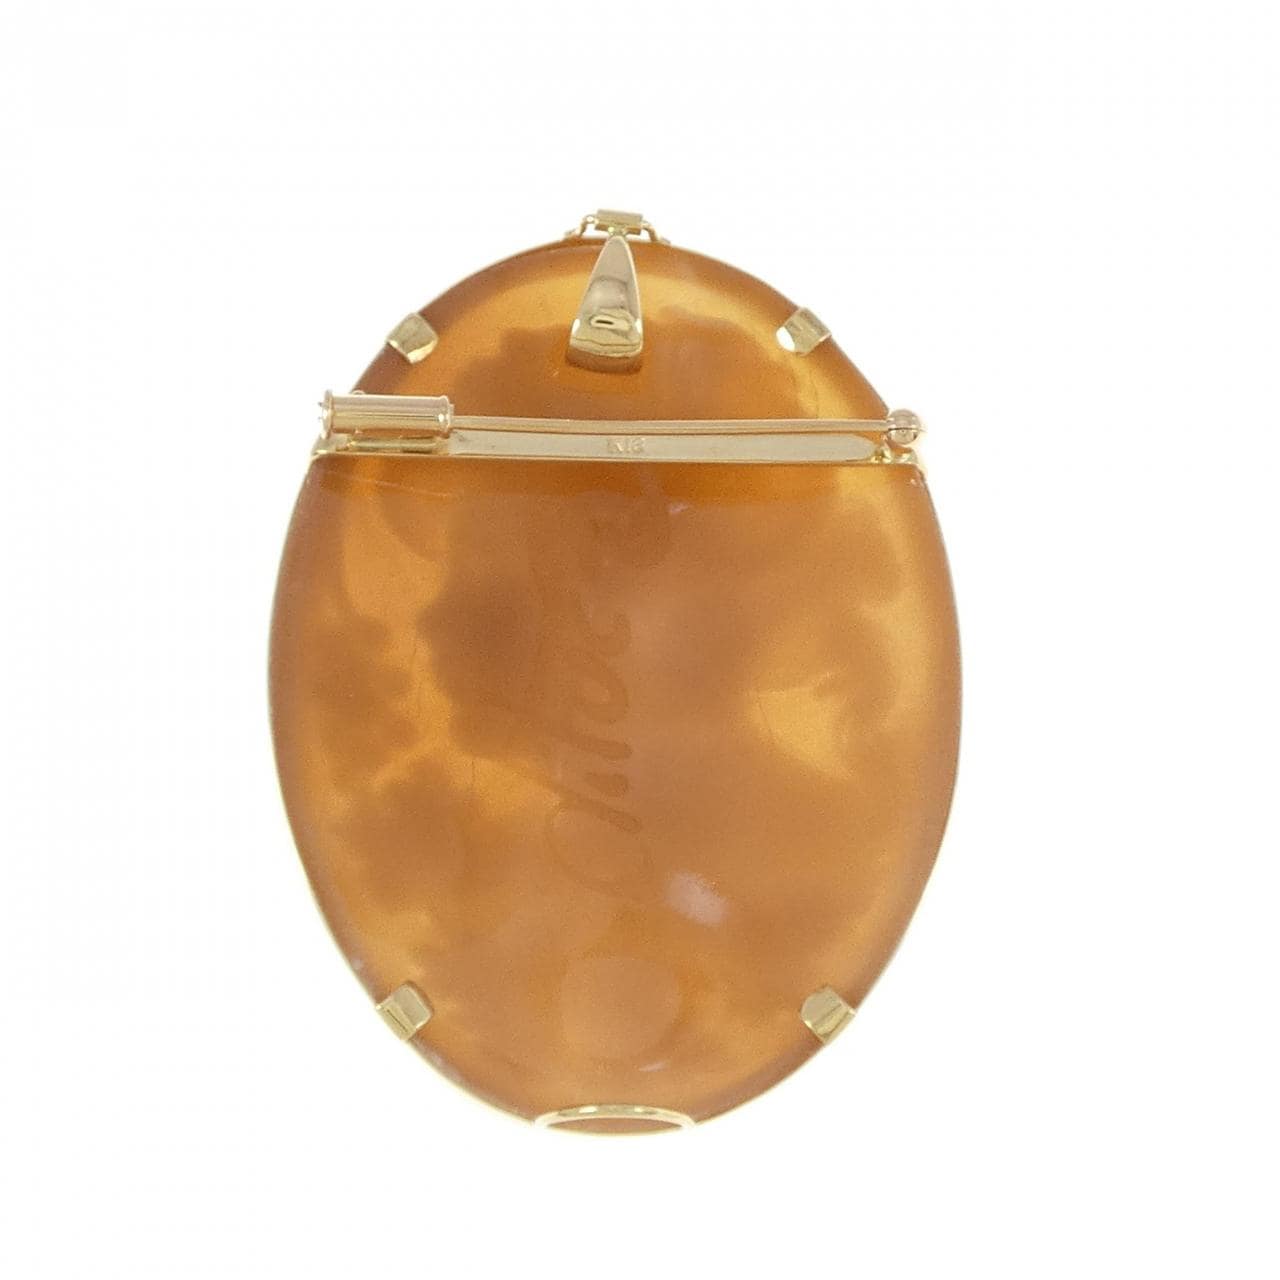 K18YG shell cameo brooch